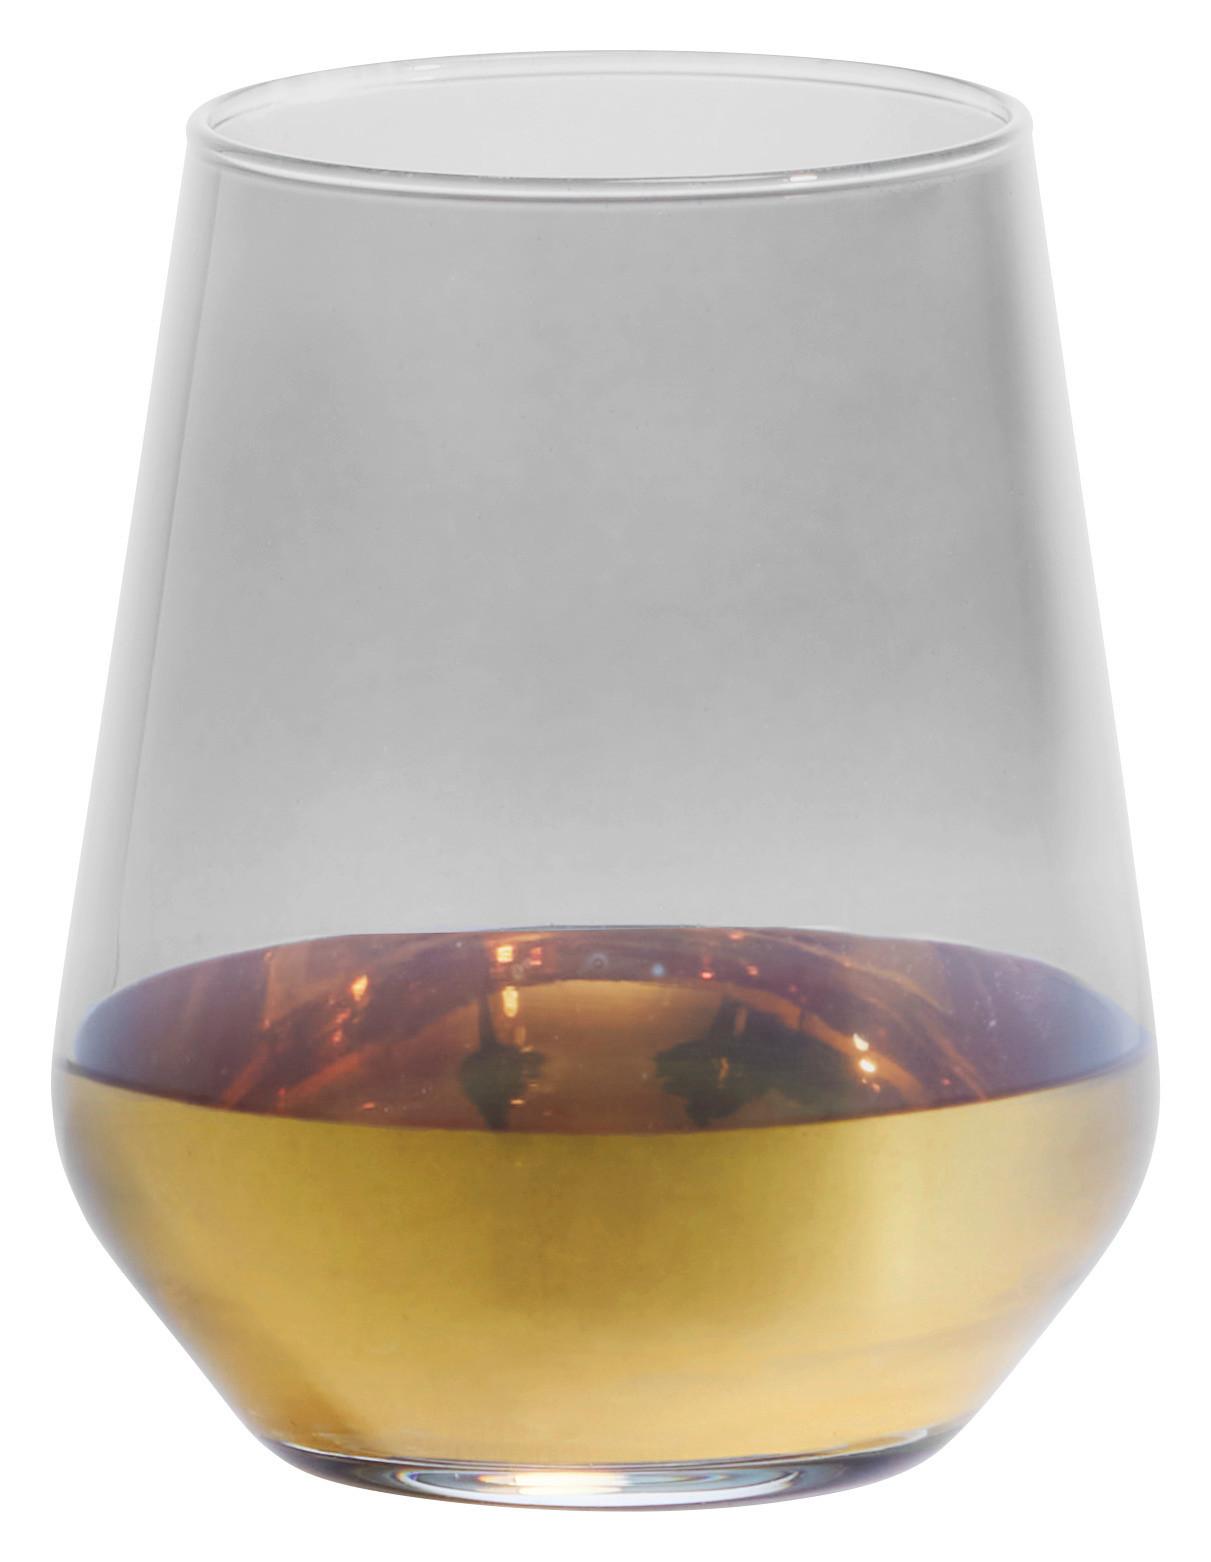 Trinkglas Glamour in Schwarz/Goldfarben ca.425ml - Goldfarben/Schwarz, ROMANTIK / LANDHAUS, Glas (6,8/11cm) - Premium Living